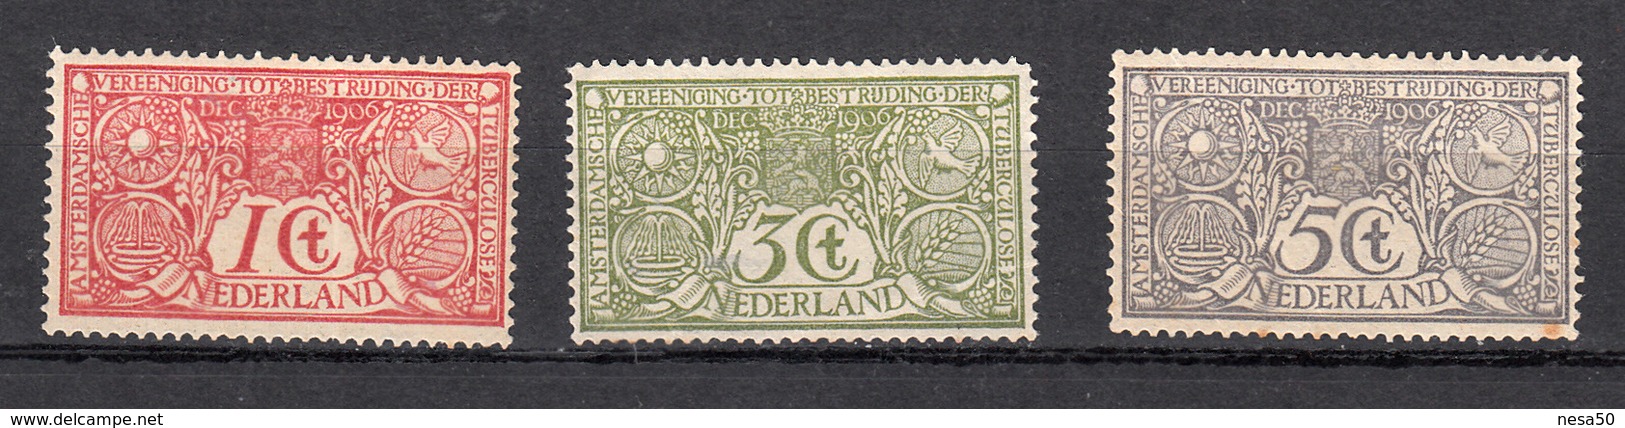 Nederland 1906 Nvph Nr 84 - 86, Mi Nr 69 - 71, Tuberculose Zegels, Niet Geheel Postfris, Derde Zegel Achterkant Vlekje - Ongebruikt